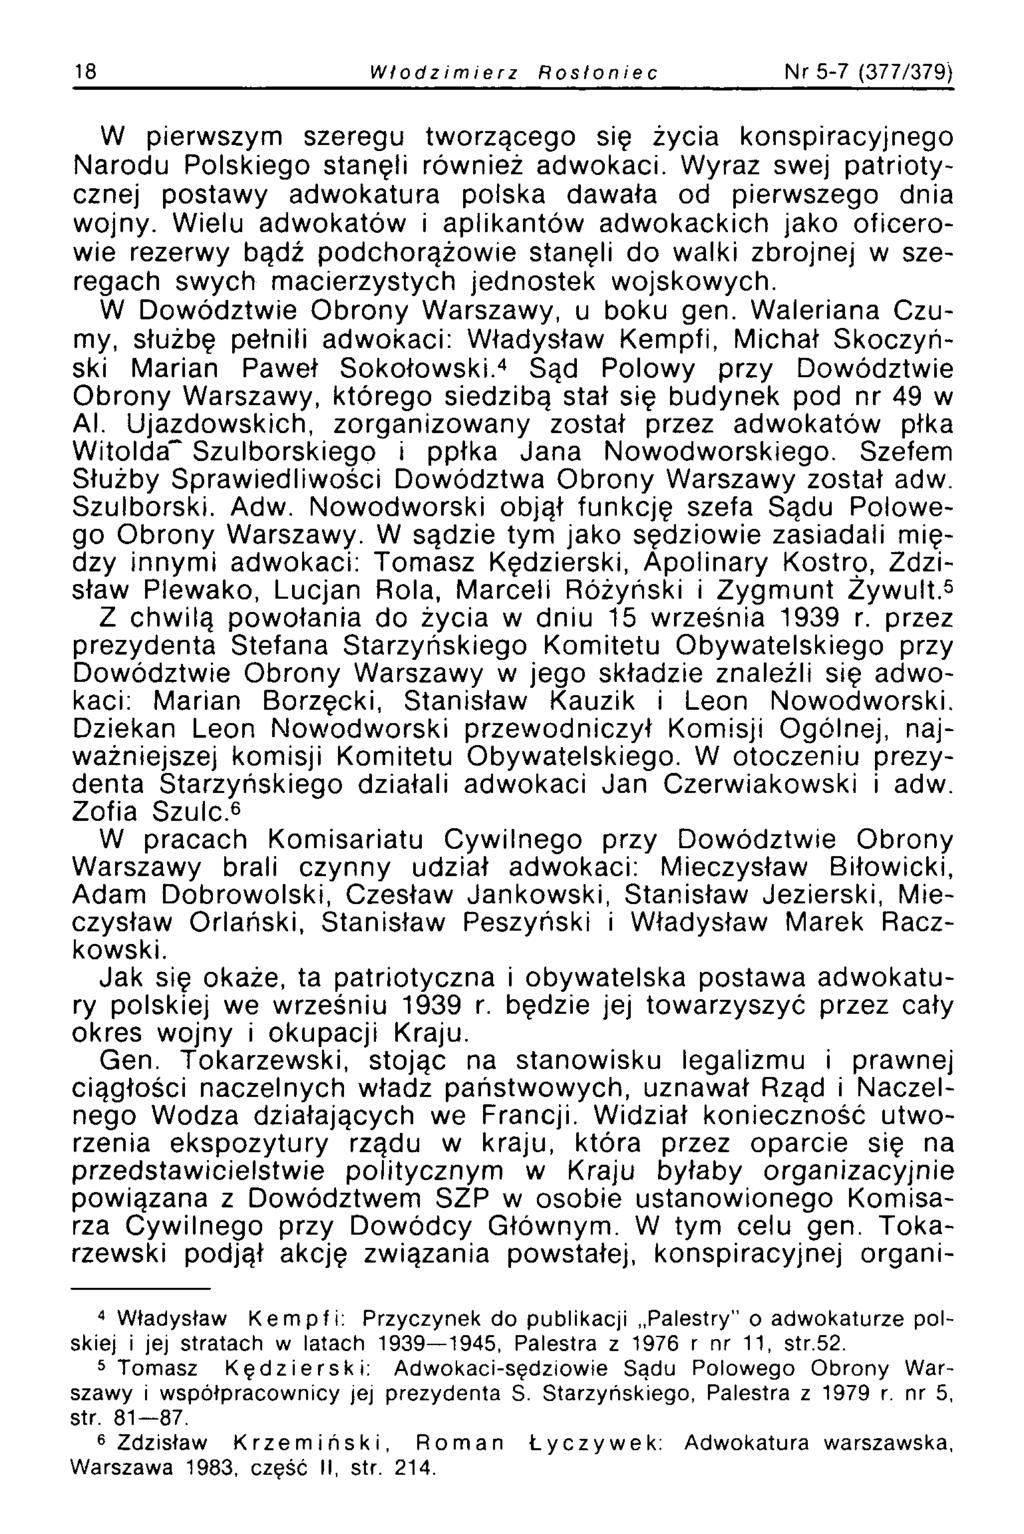 18 Włodzimierz Rosi on i e c Nr 5-7 (377/379) W pierwszym szeregu tworzącego się życia konspiracyjnego Narodu Polskiego stanęli również adwokaci.